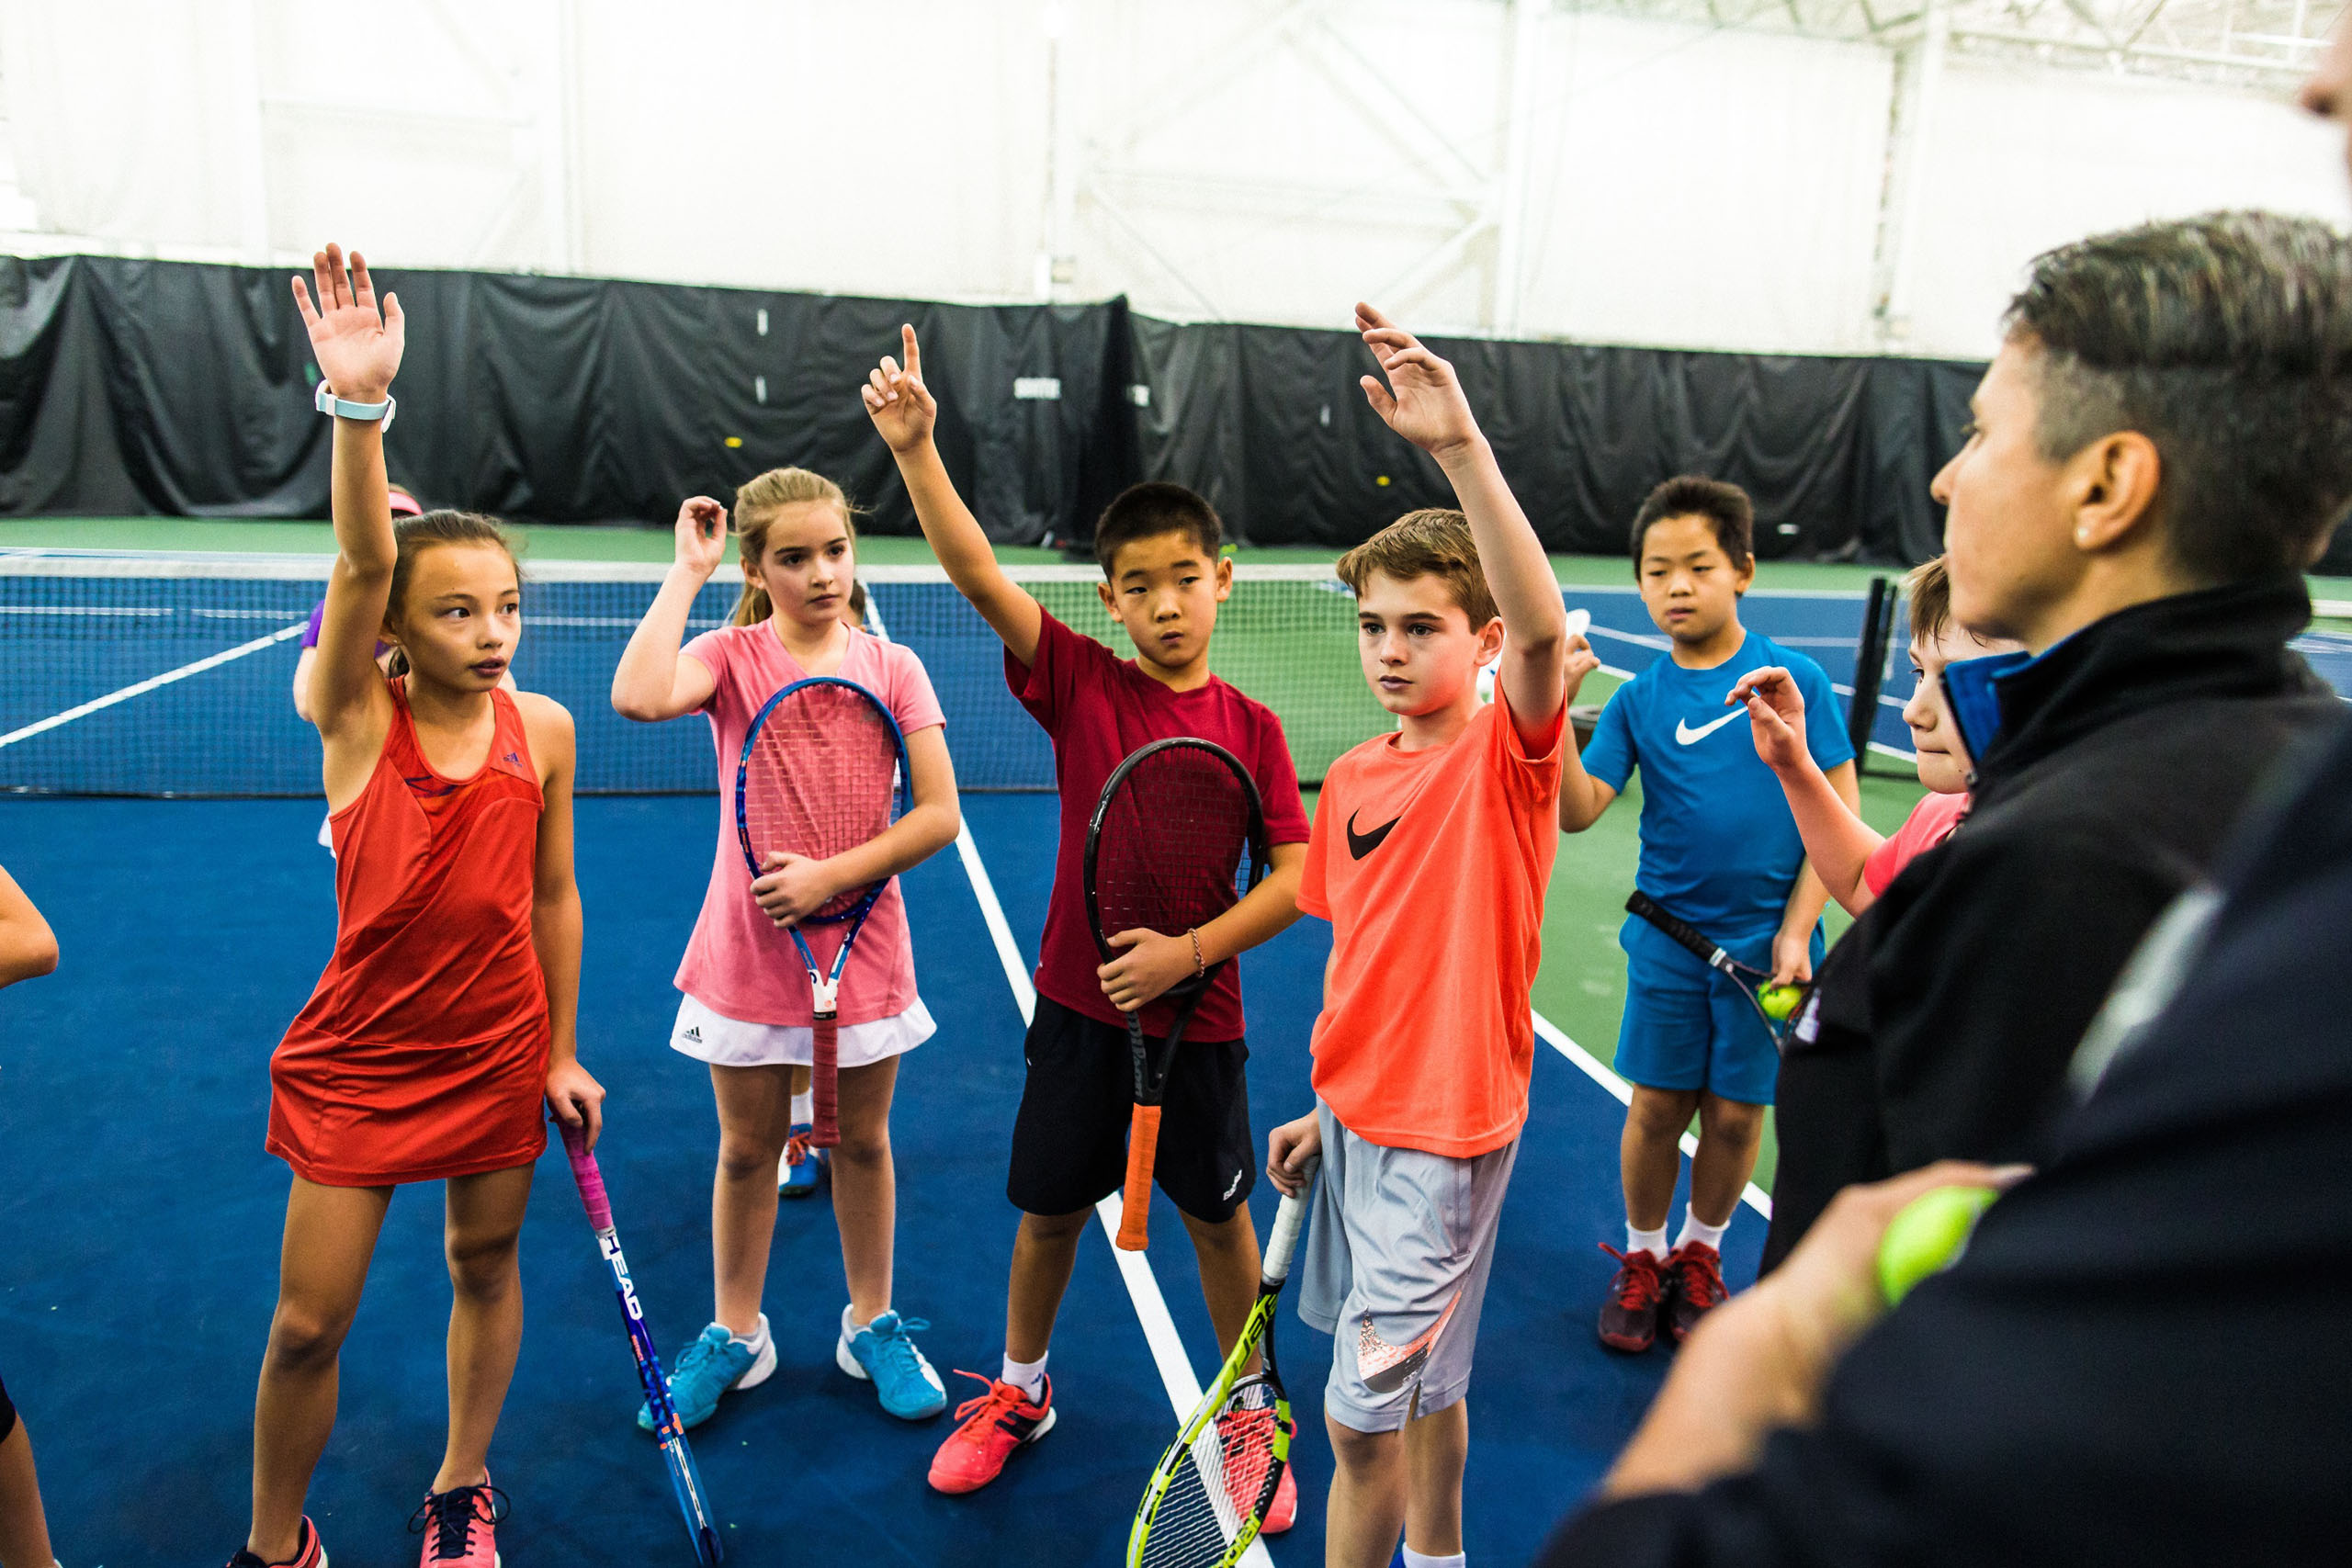 Children and trainer on tennis court